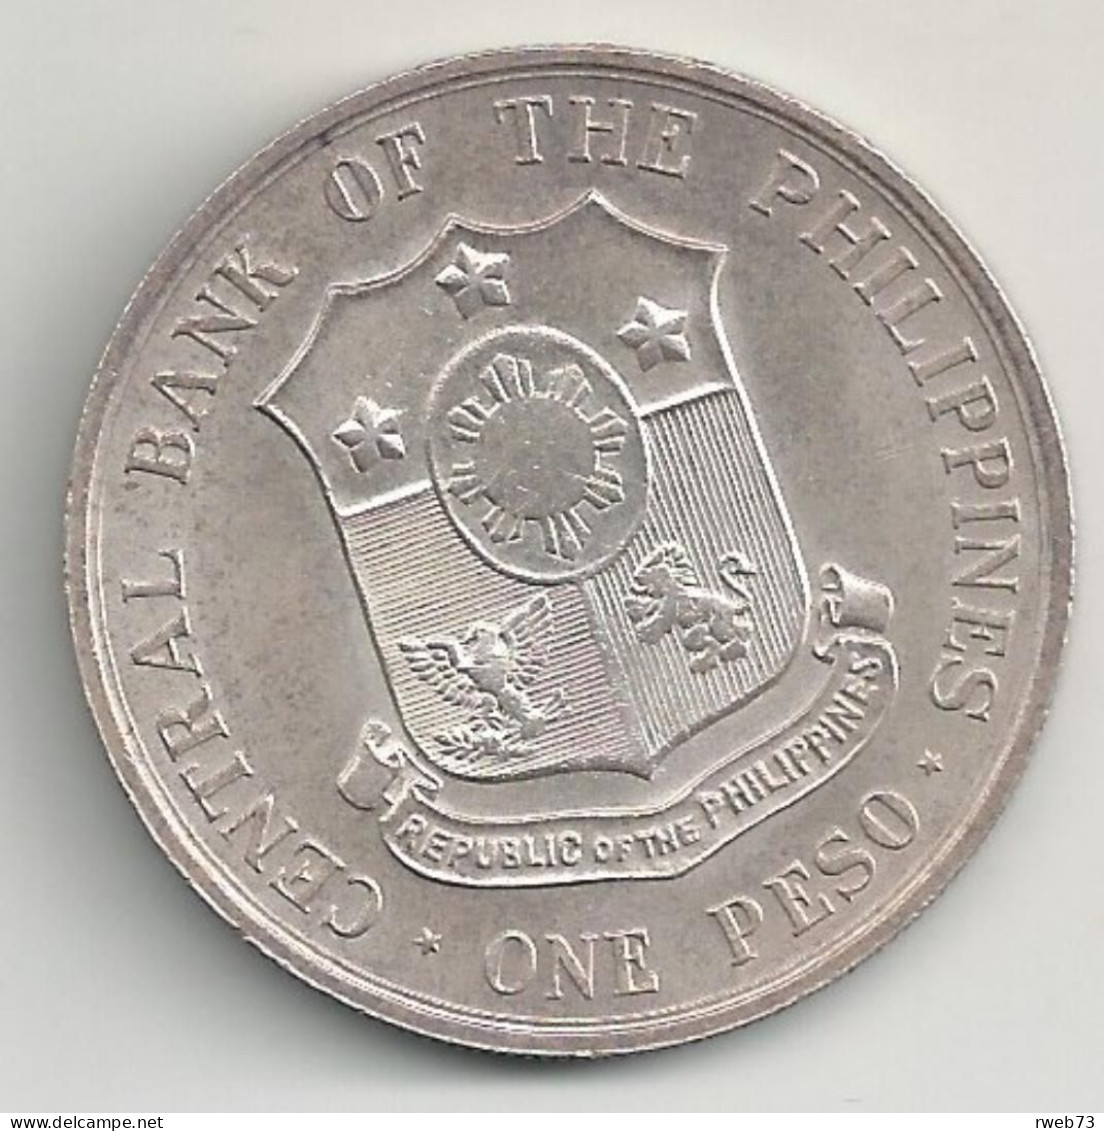 PHILIPPINES - One Peso - 1963 - TB/TTB - Philippines